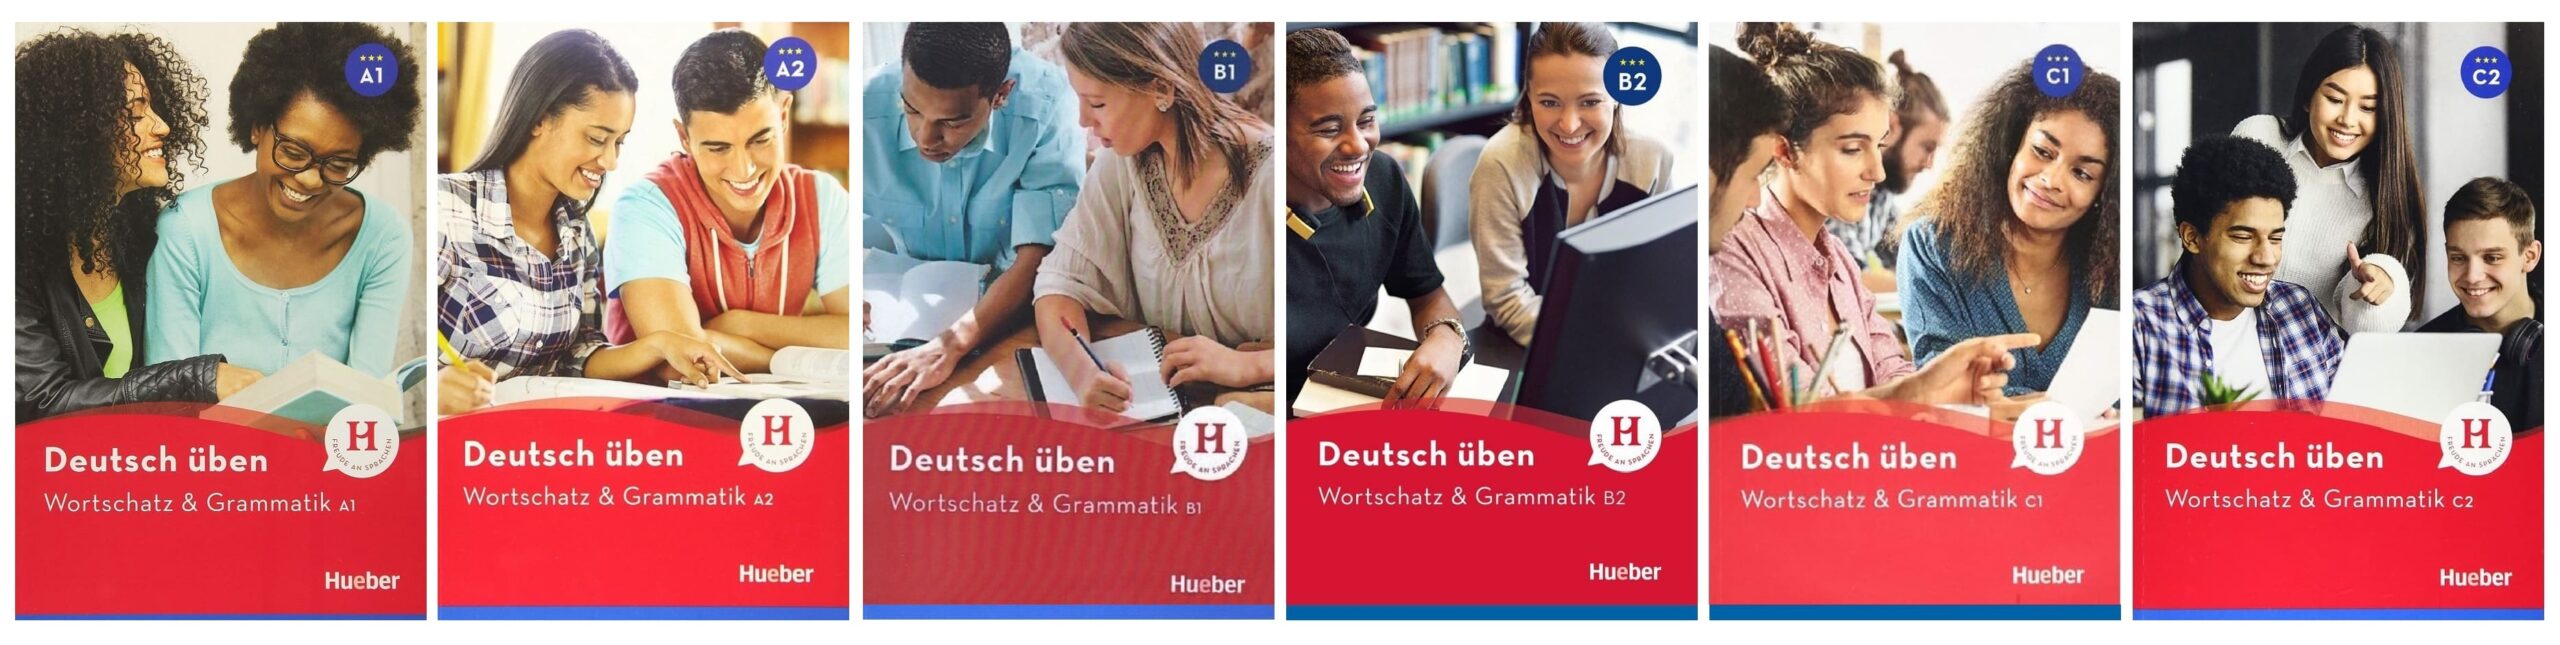 خرید کتاب زبان | ورچتز اند گرمتیک | Deutsch Uben Wortschatz & Grammatik NEU | کتاب زبان آلمانی